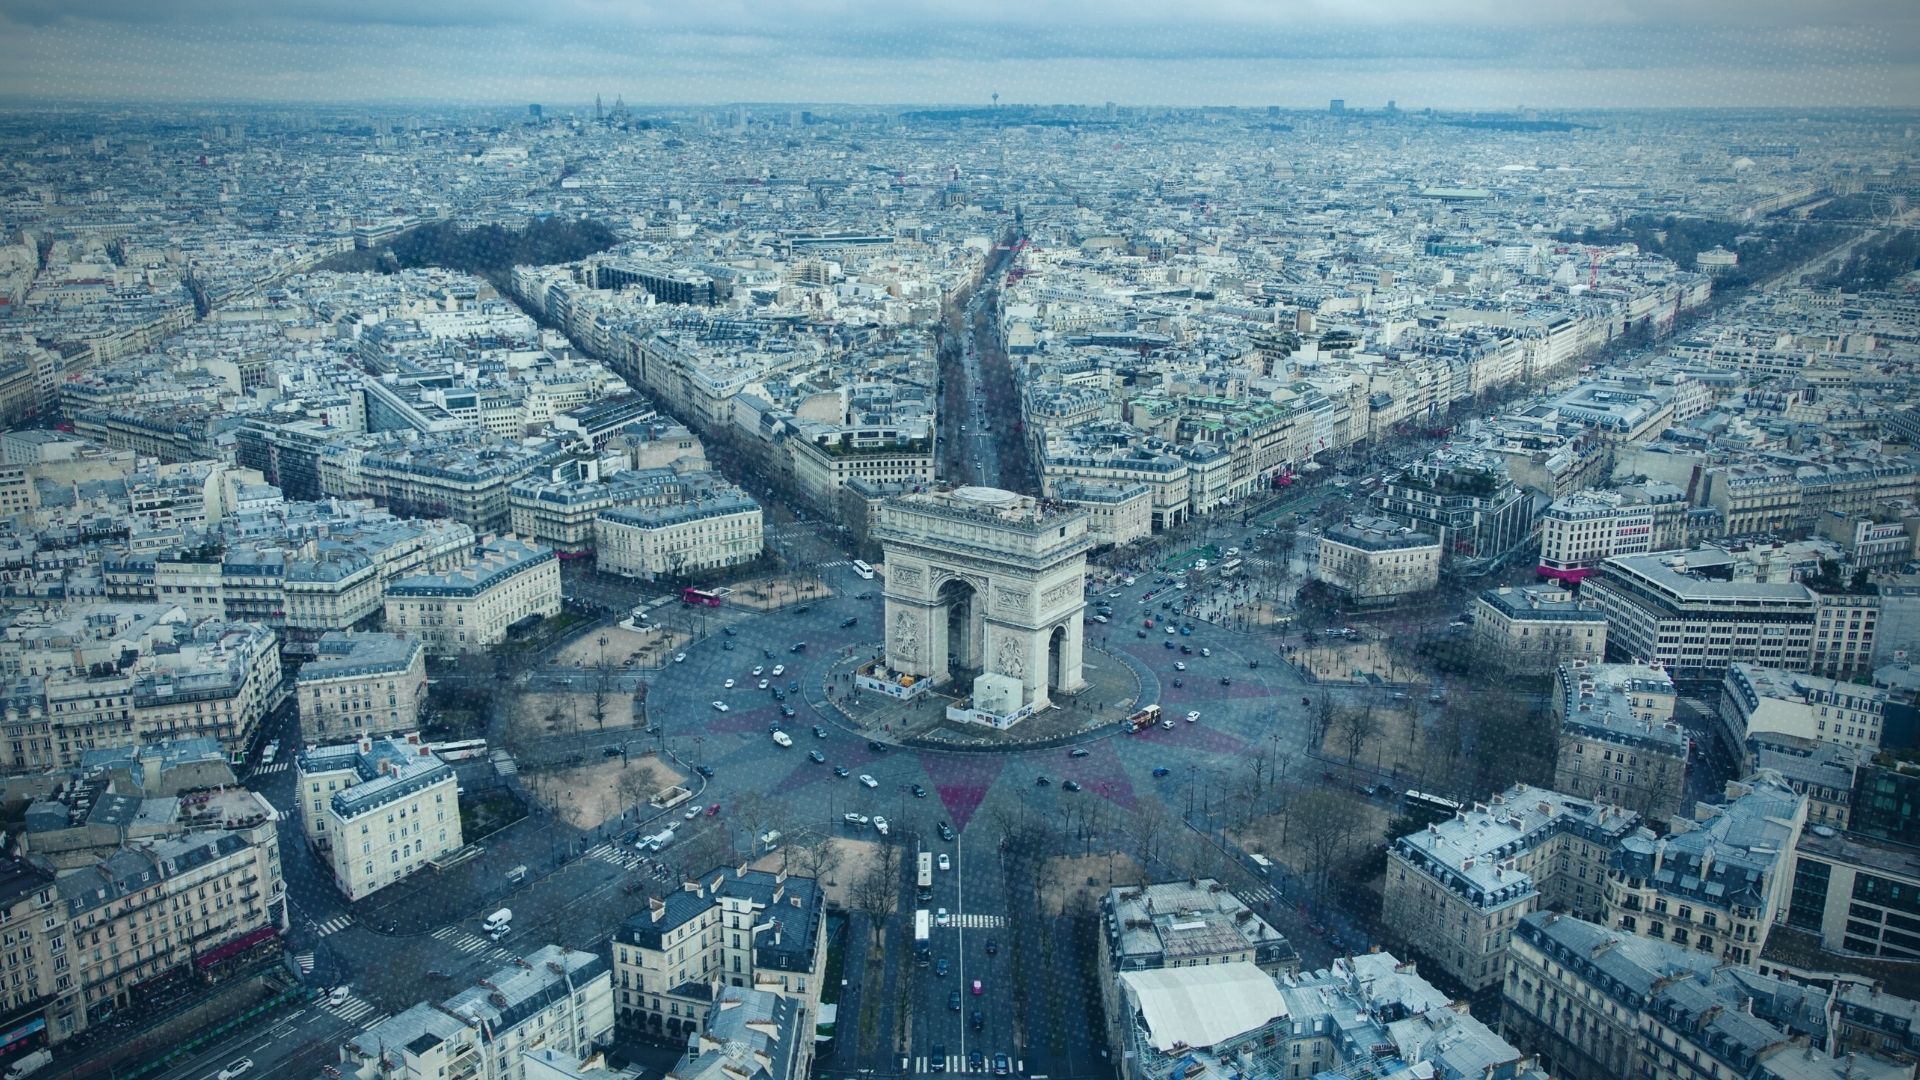 view of the arc de triomphe and paris city skyline